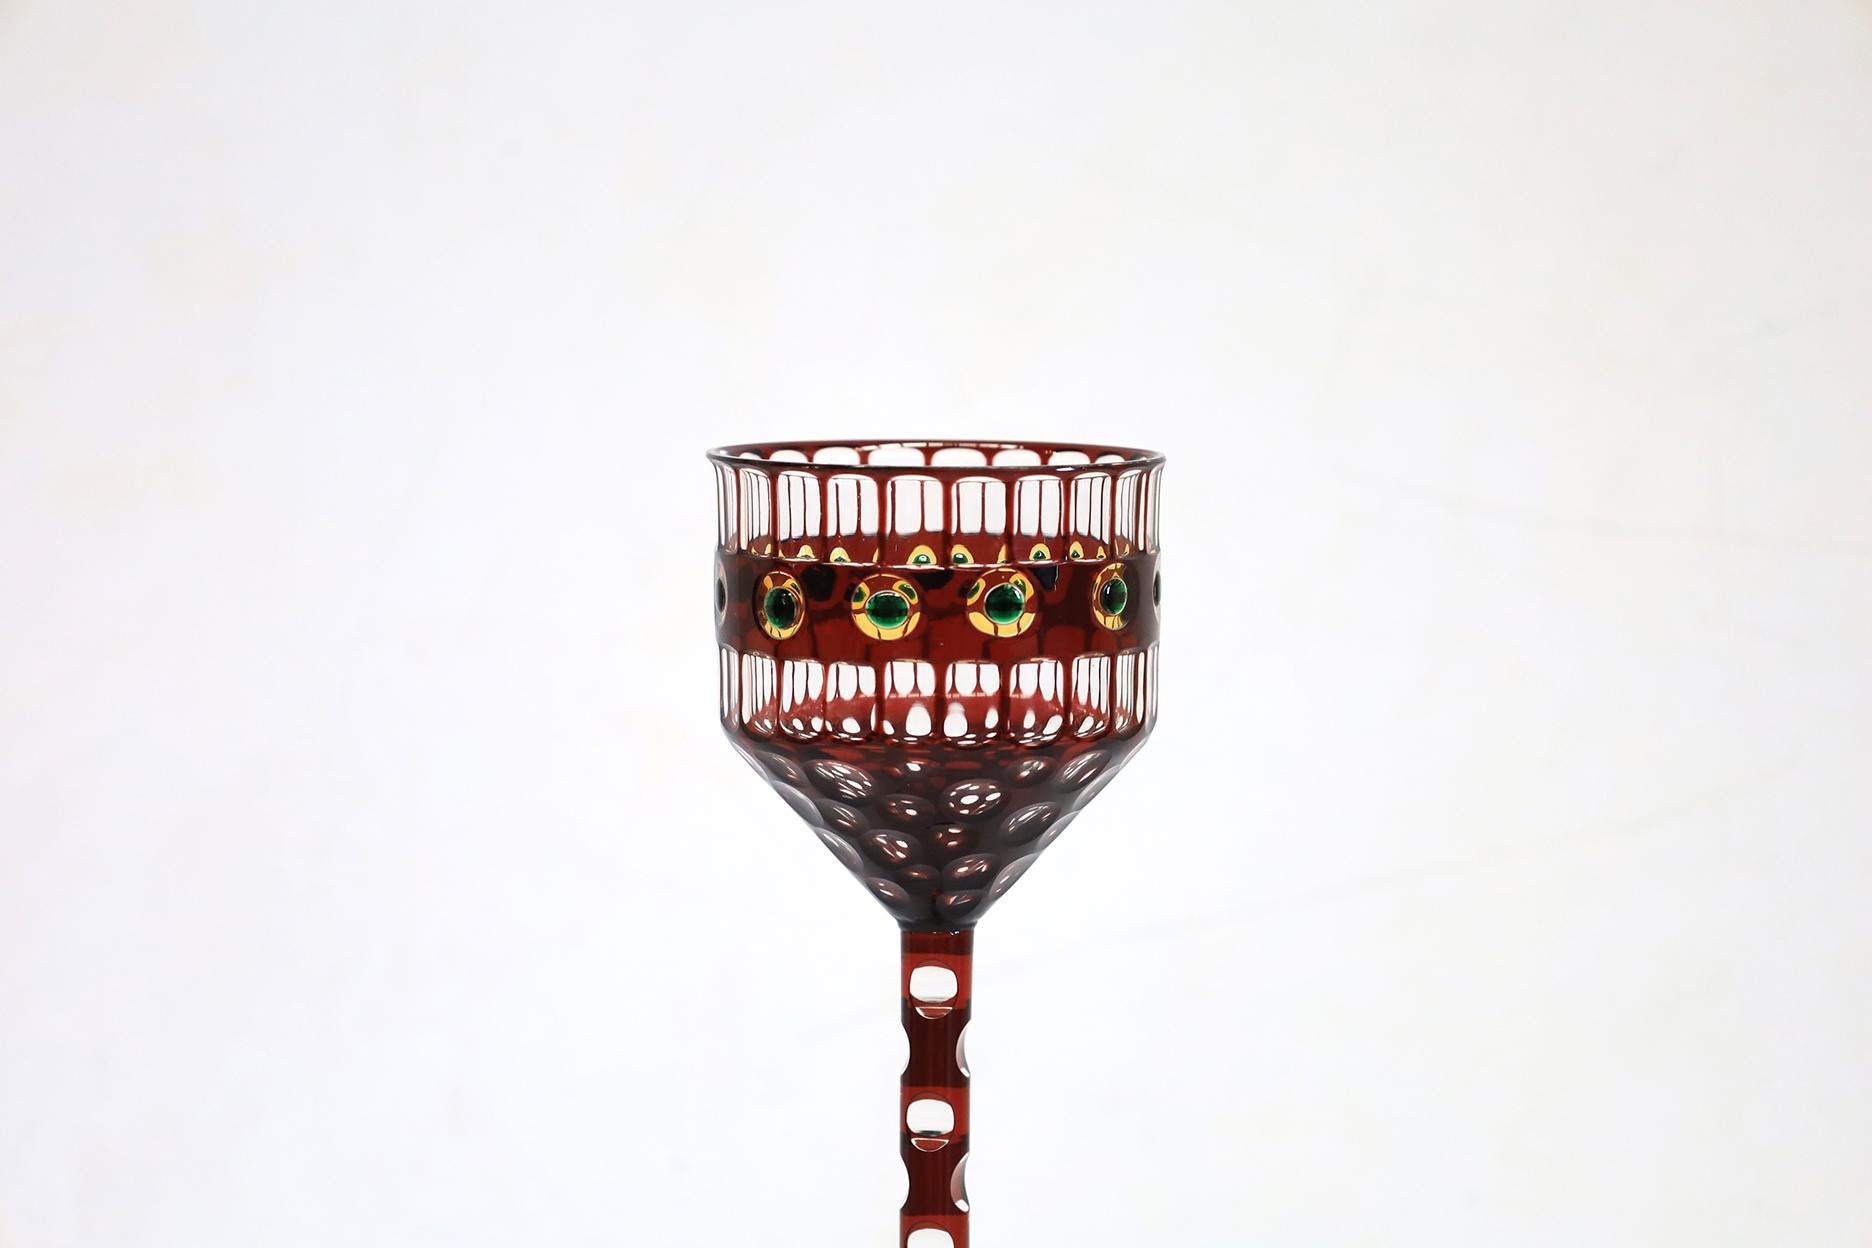 Außergewöhnliches Sammlerstück Trinkglas in perfektem Zustand, Otto Prutscher zugeschrieben.
Hergestellt im Jahr 1906 von Meyr's Neffe in Wien, Österreich.
Dieses Design befindet sich jetzt in der ständigen Sammlung des  Museum für angewandte Kunst